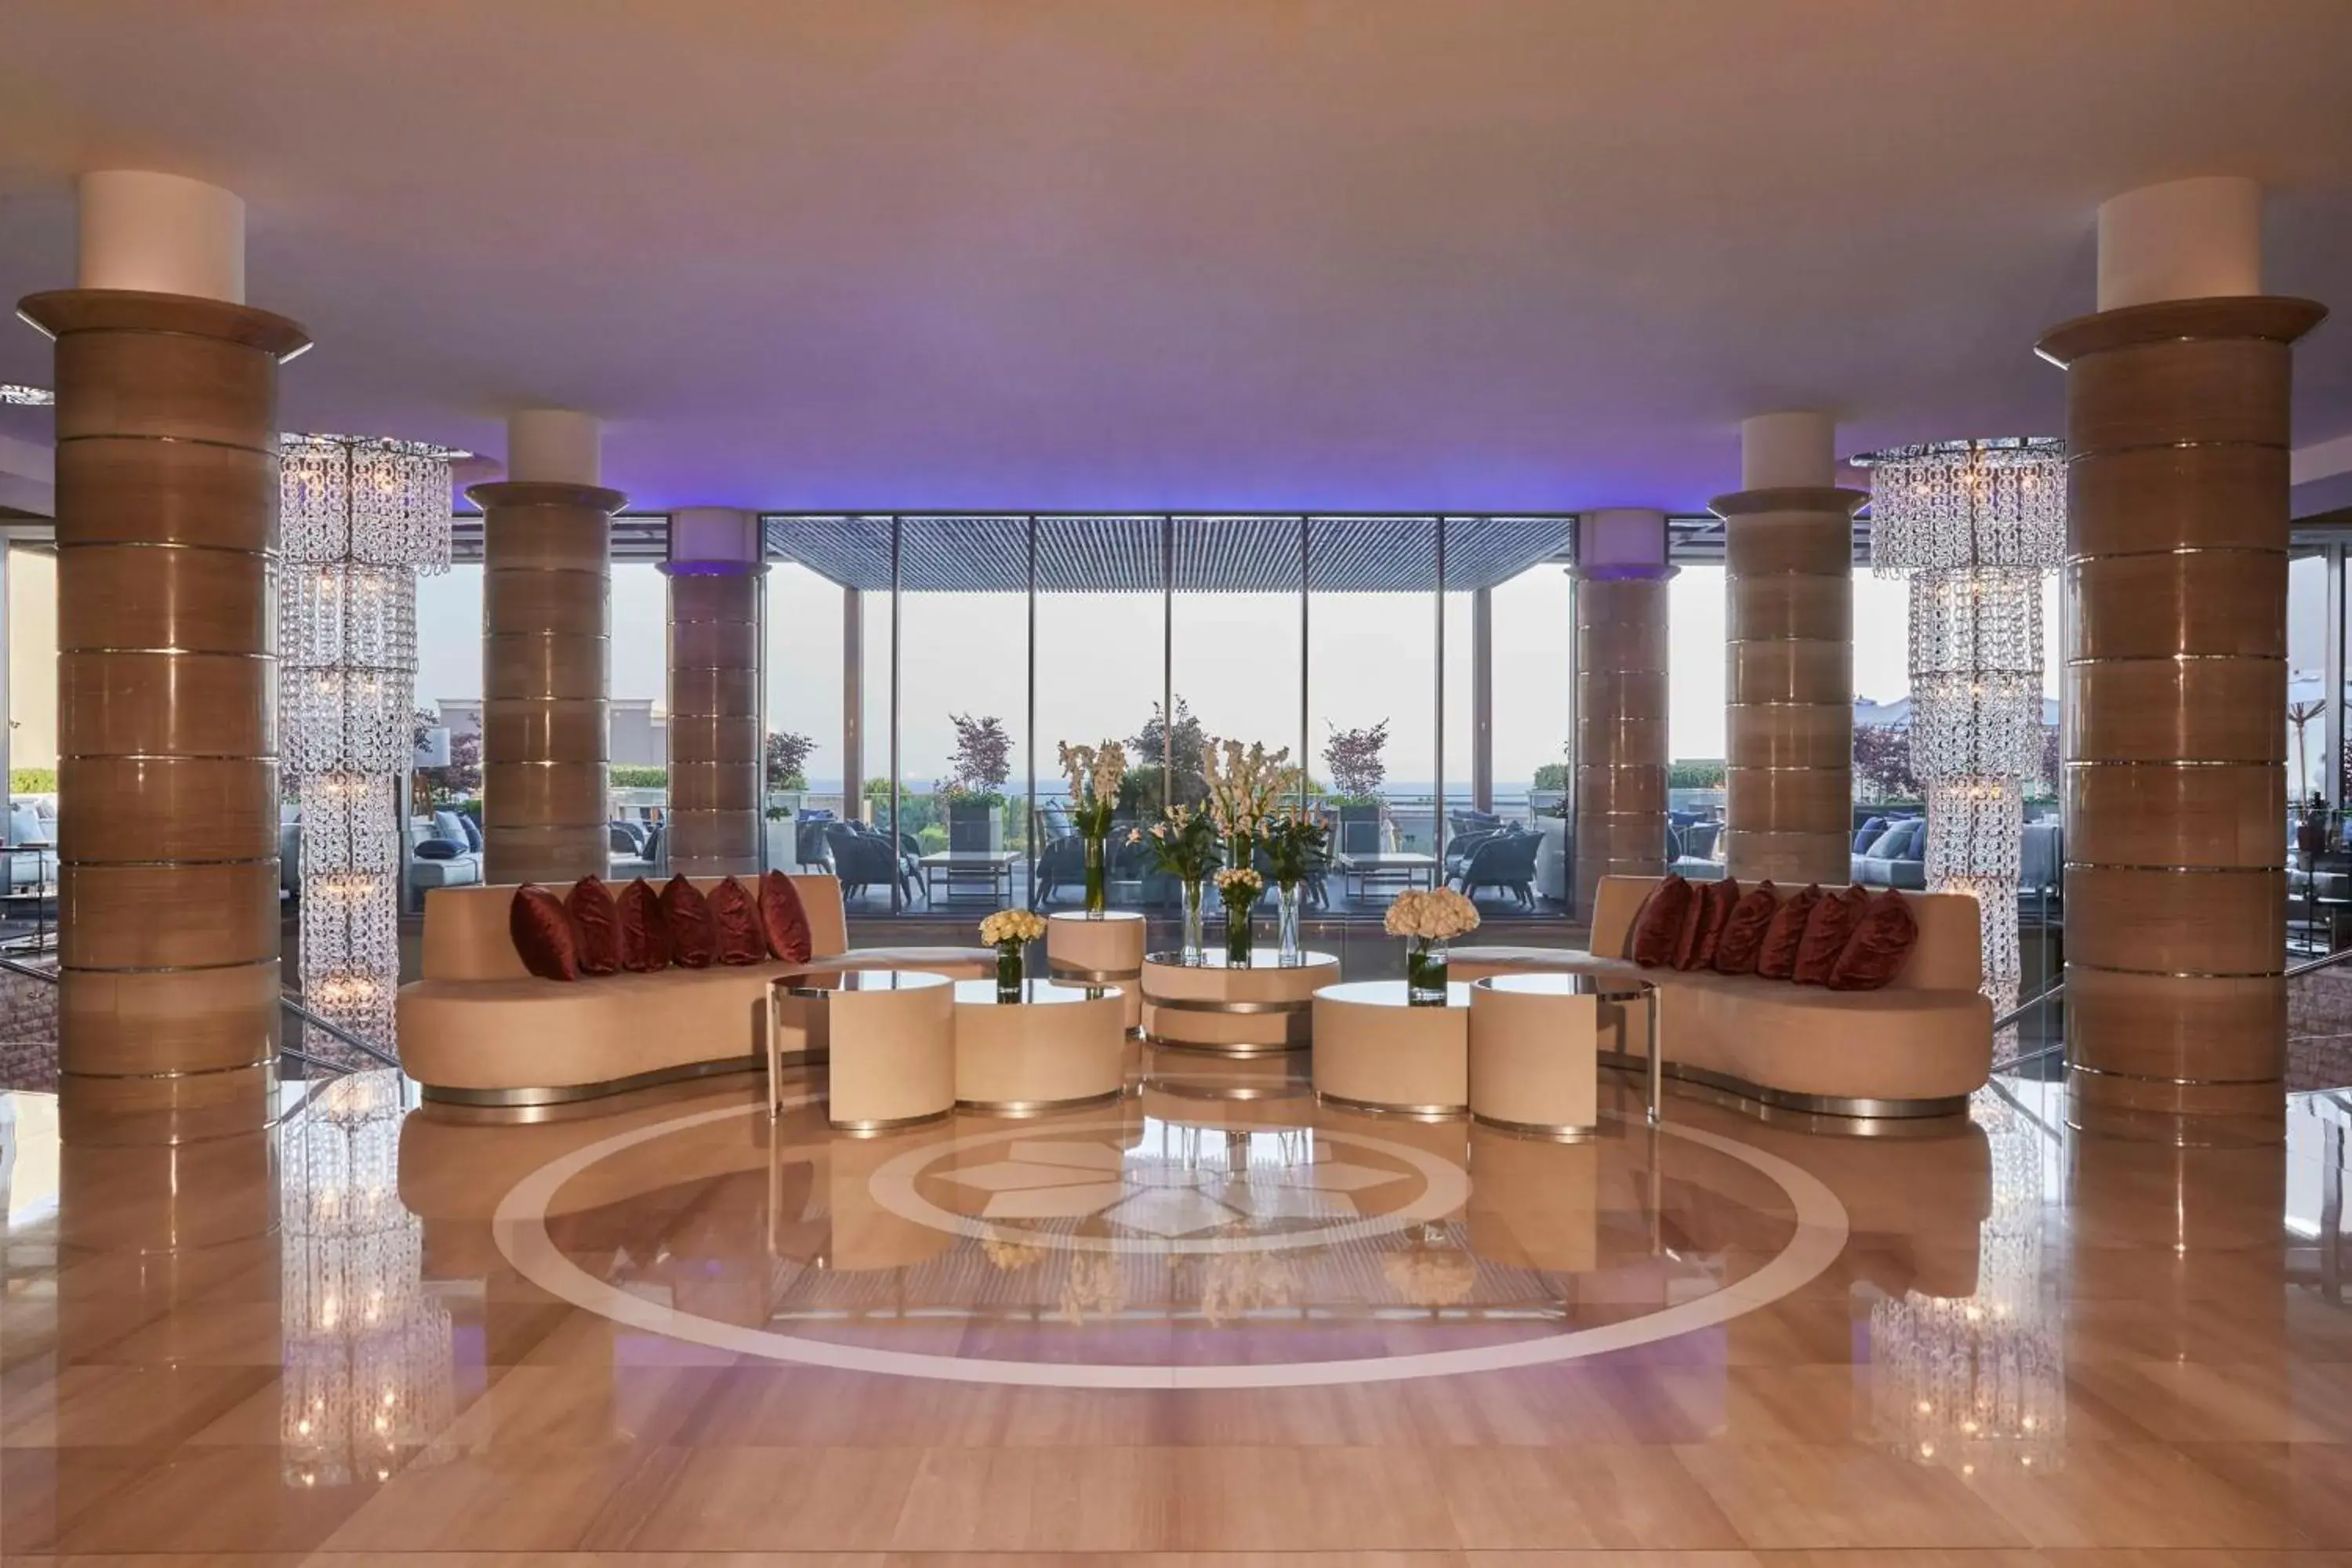 Lobby or reception in Kempinski Hotel Adriatic Istria Croatia